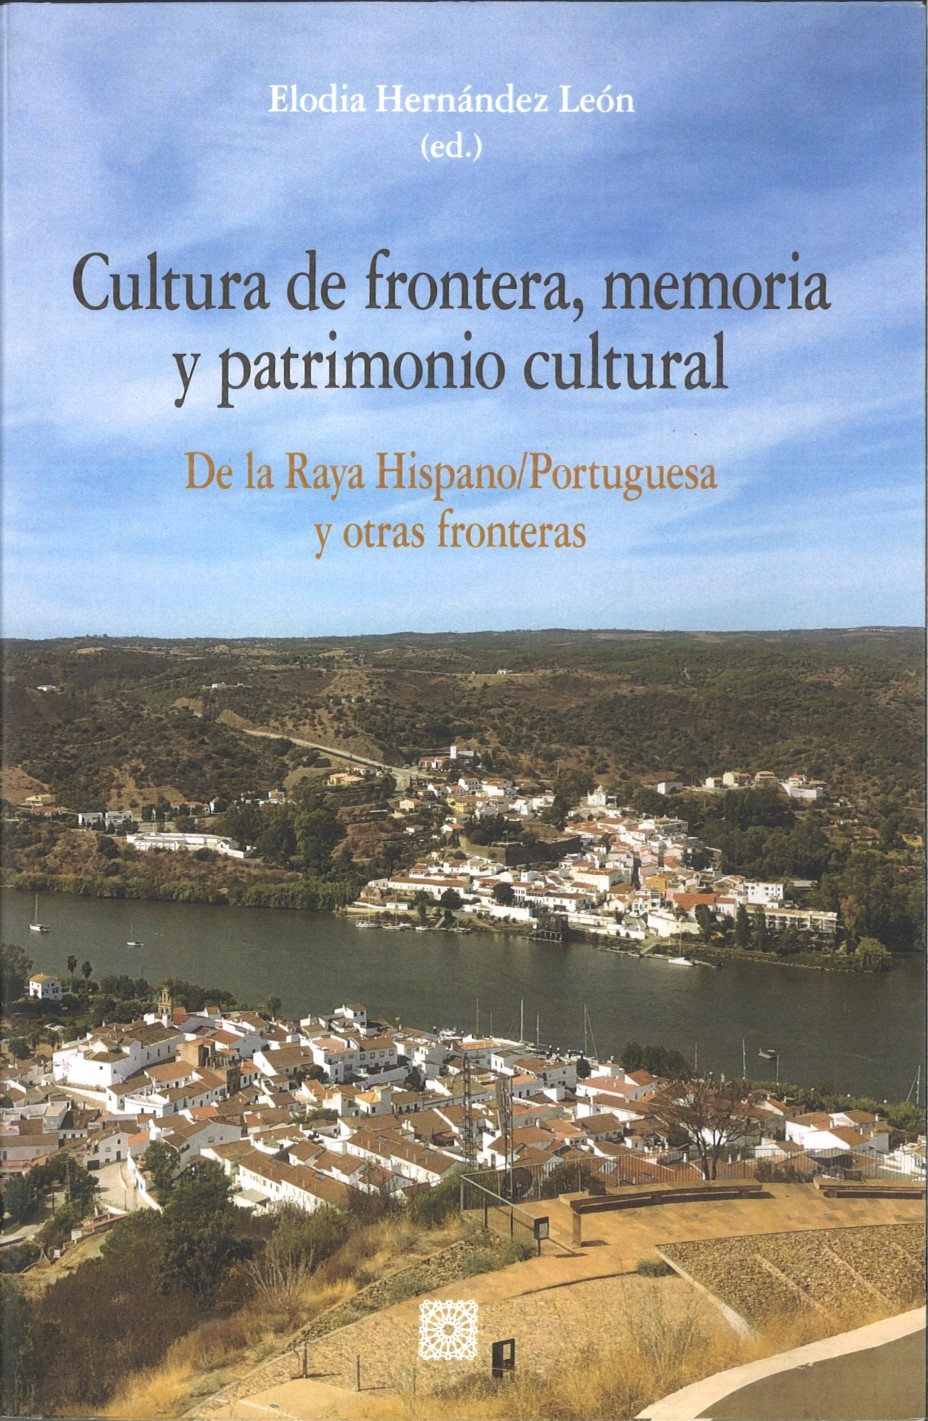 Imagen de portada del libro Cultura de frontera, memoria y patrimonio cultural